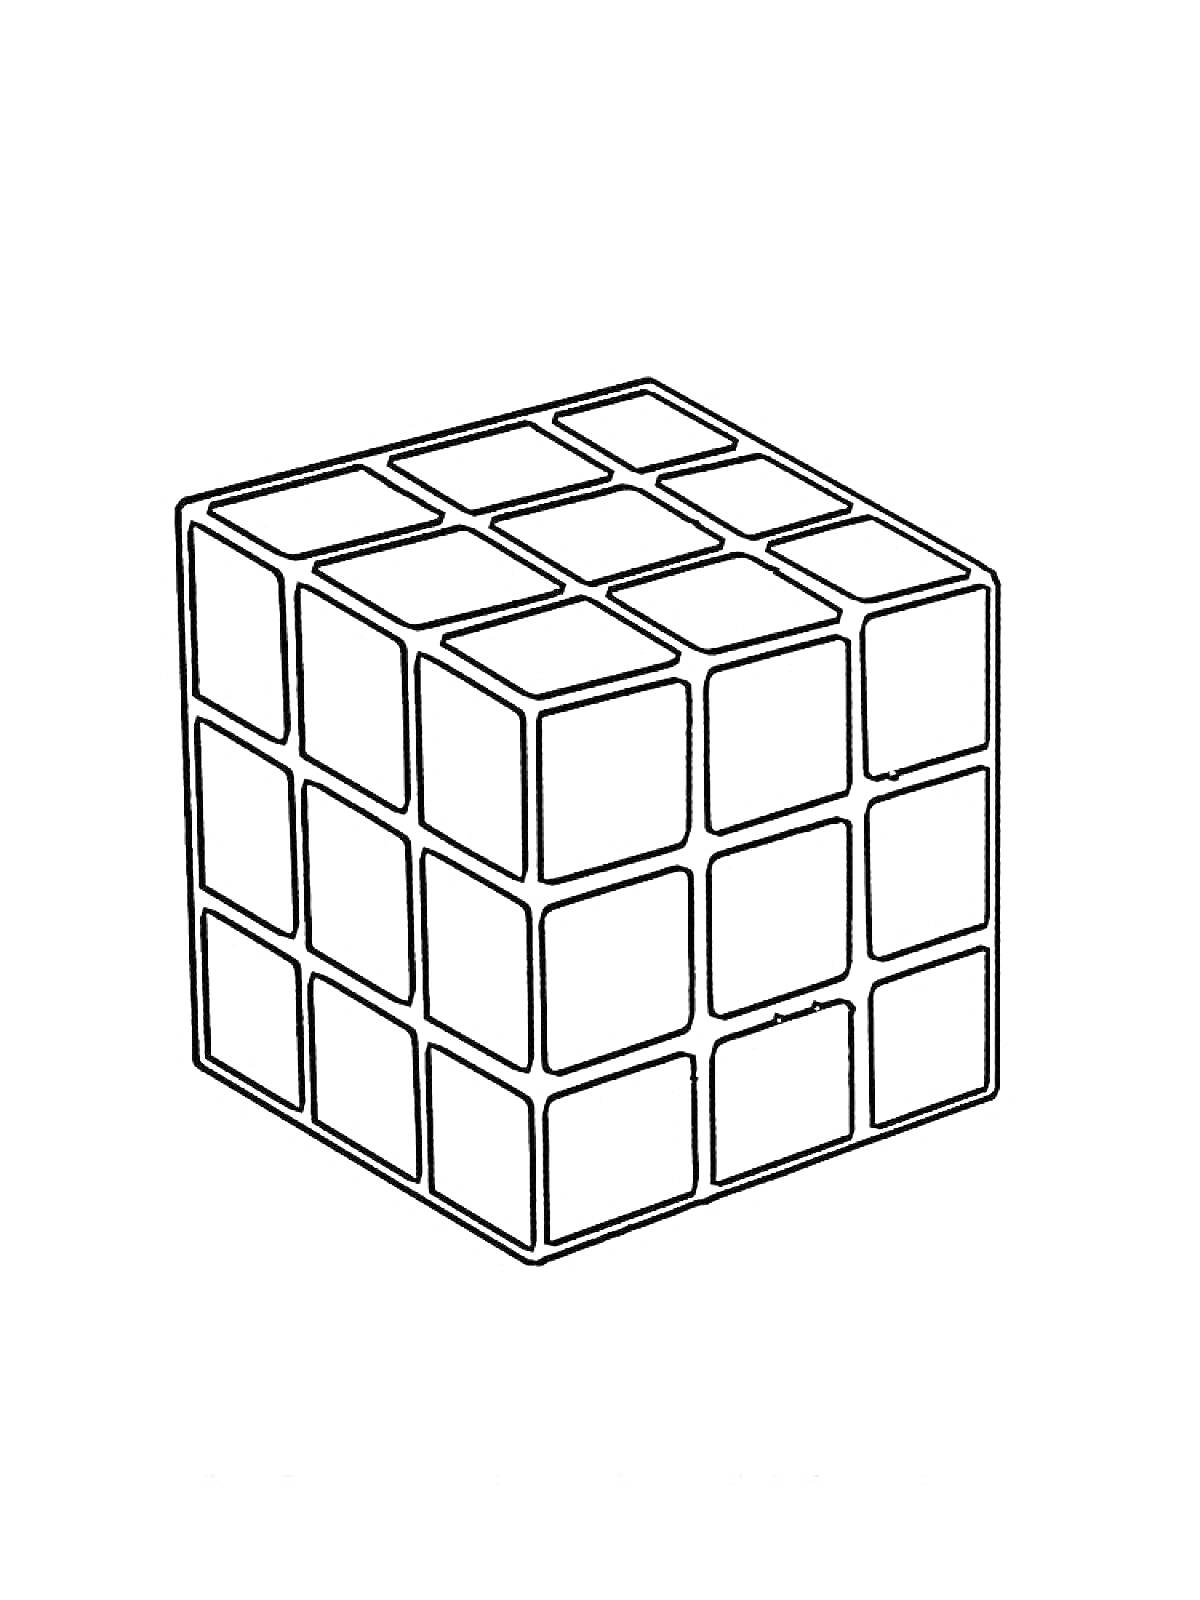 Кубик Рубика в виде раскраски, куб из отдельных квадратов, пустые клетки для раскрашивания.